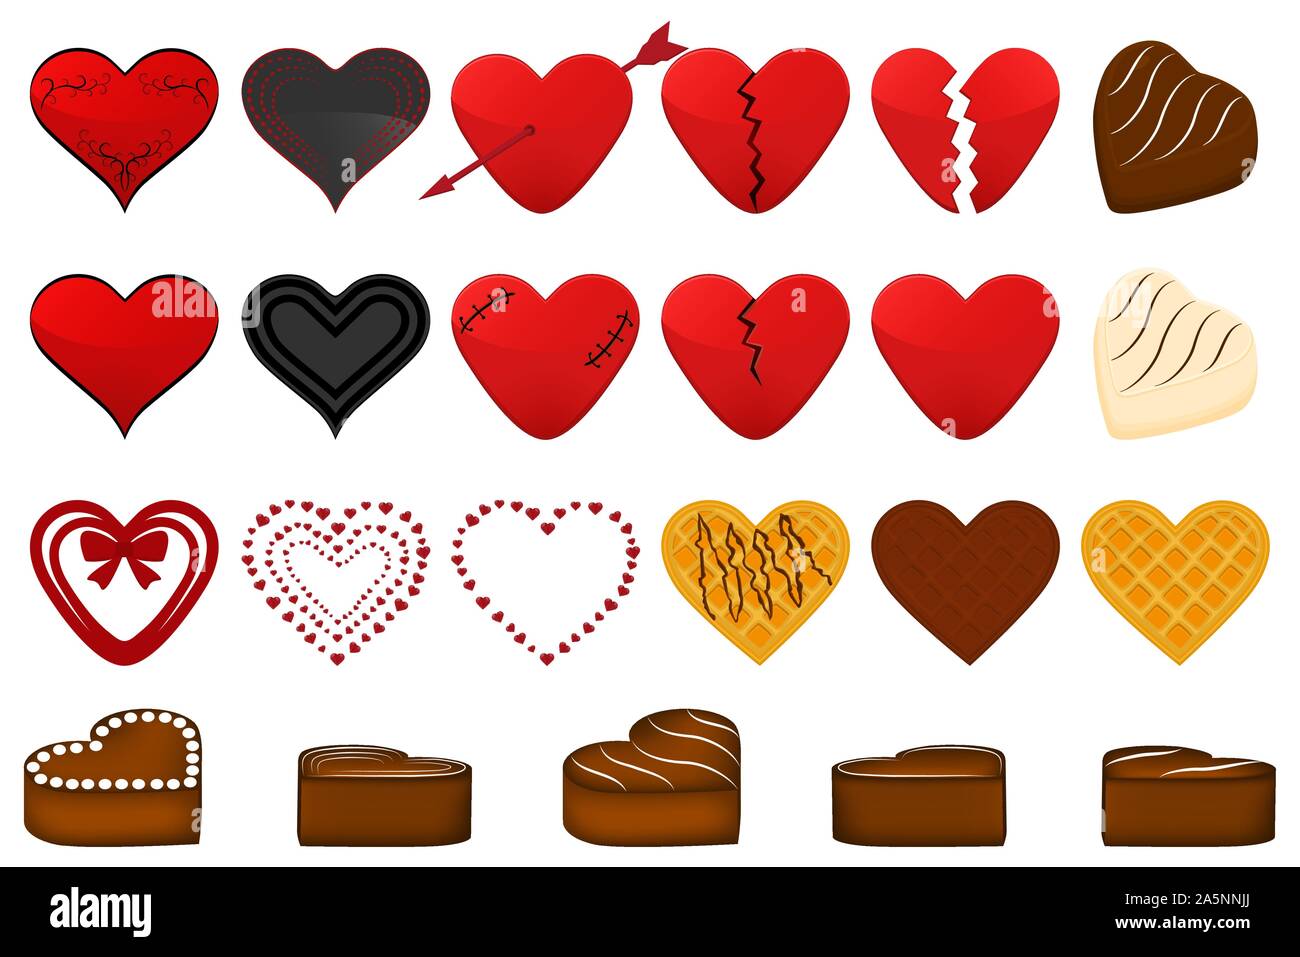 Abbildung auf Thema große farbige verschiedene schöne rote Herzen für Valentinstag. Herz-Muster bestehend aus Sammlung Zubehör bei Vale Stock Vektor